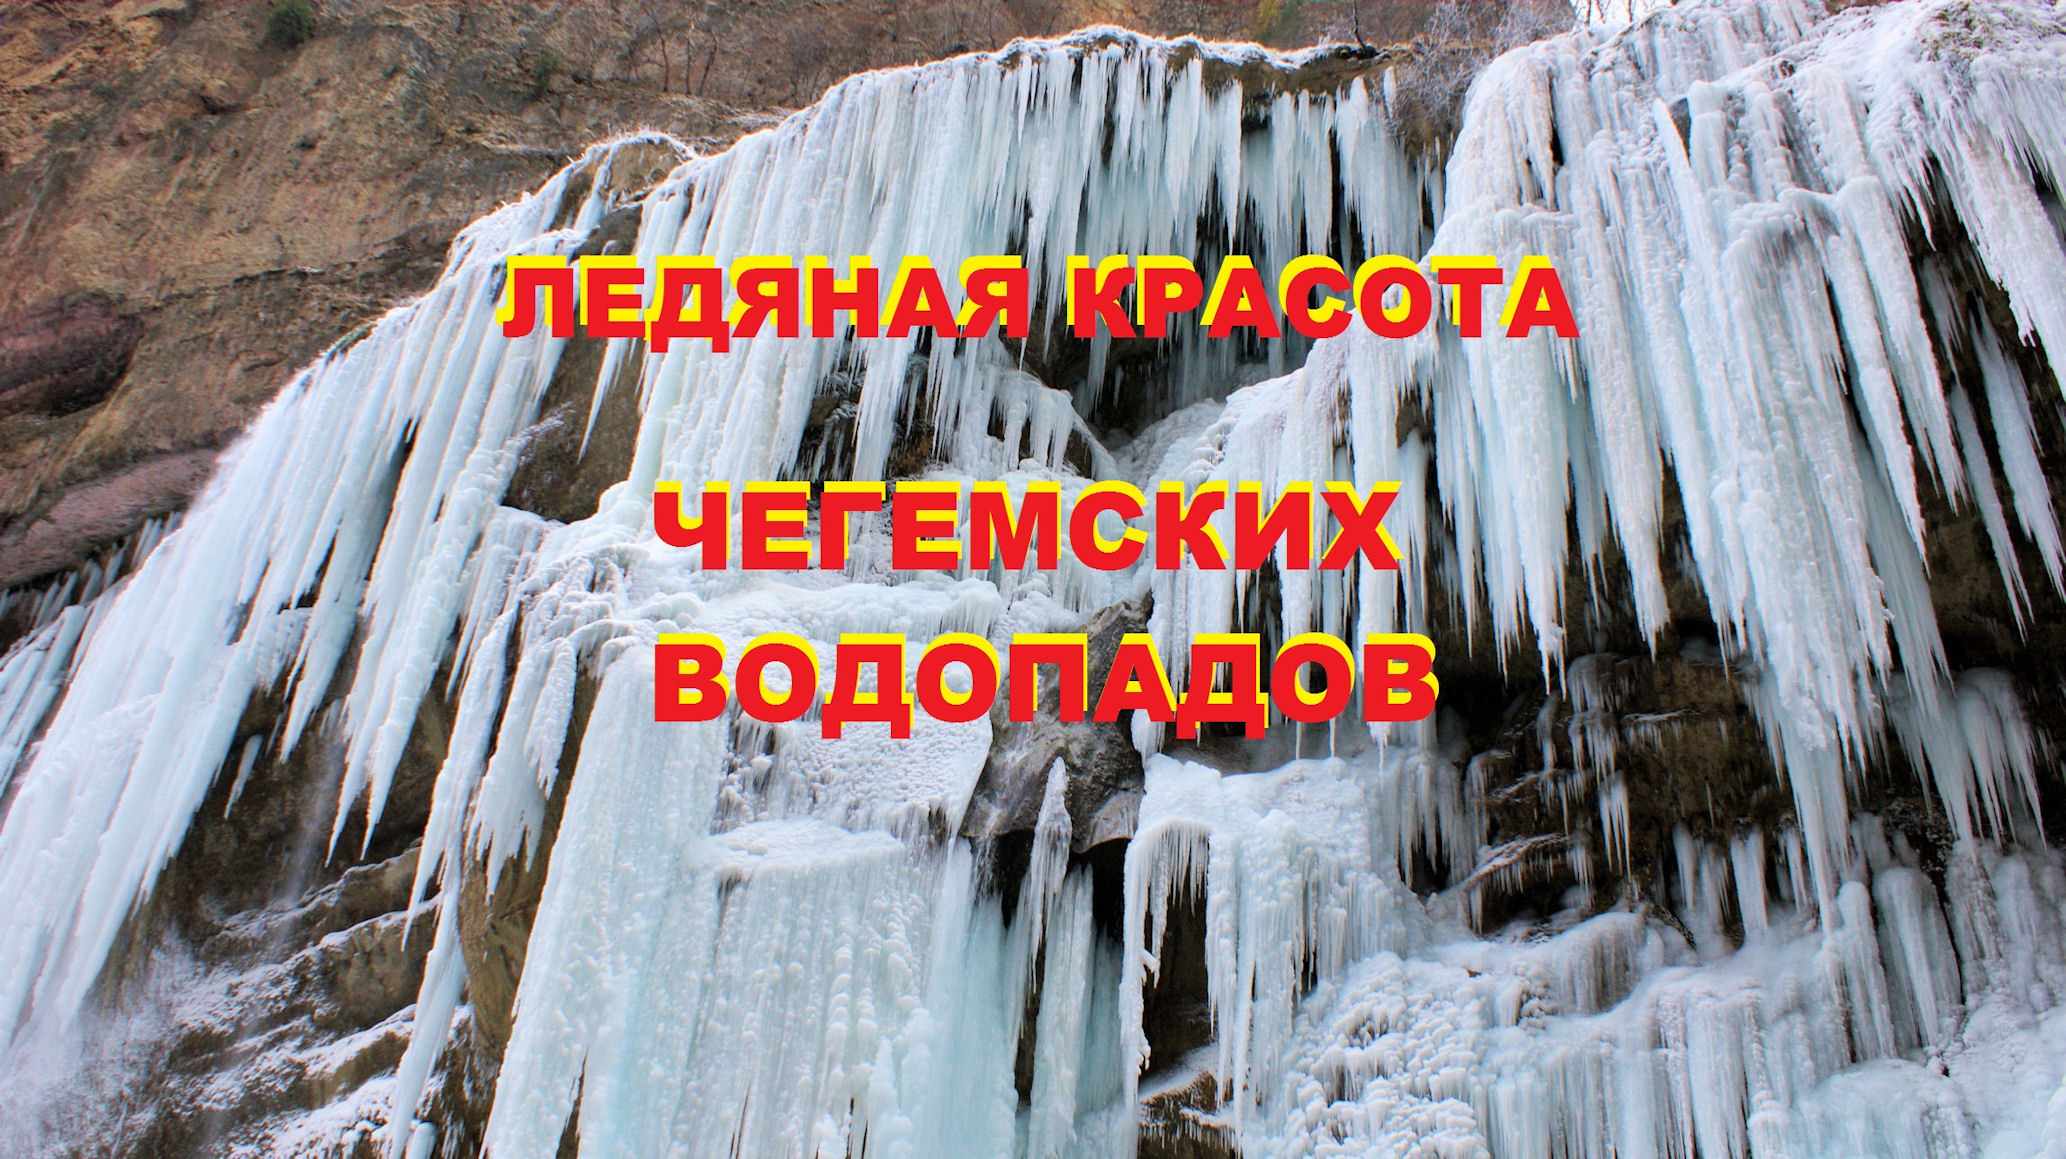 Замёрзшие Чегемские водопады, Кабардино-Балкария